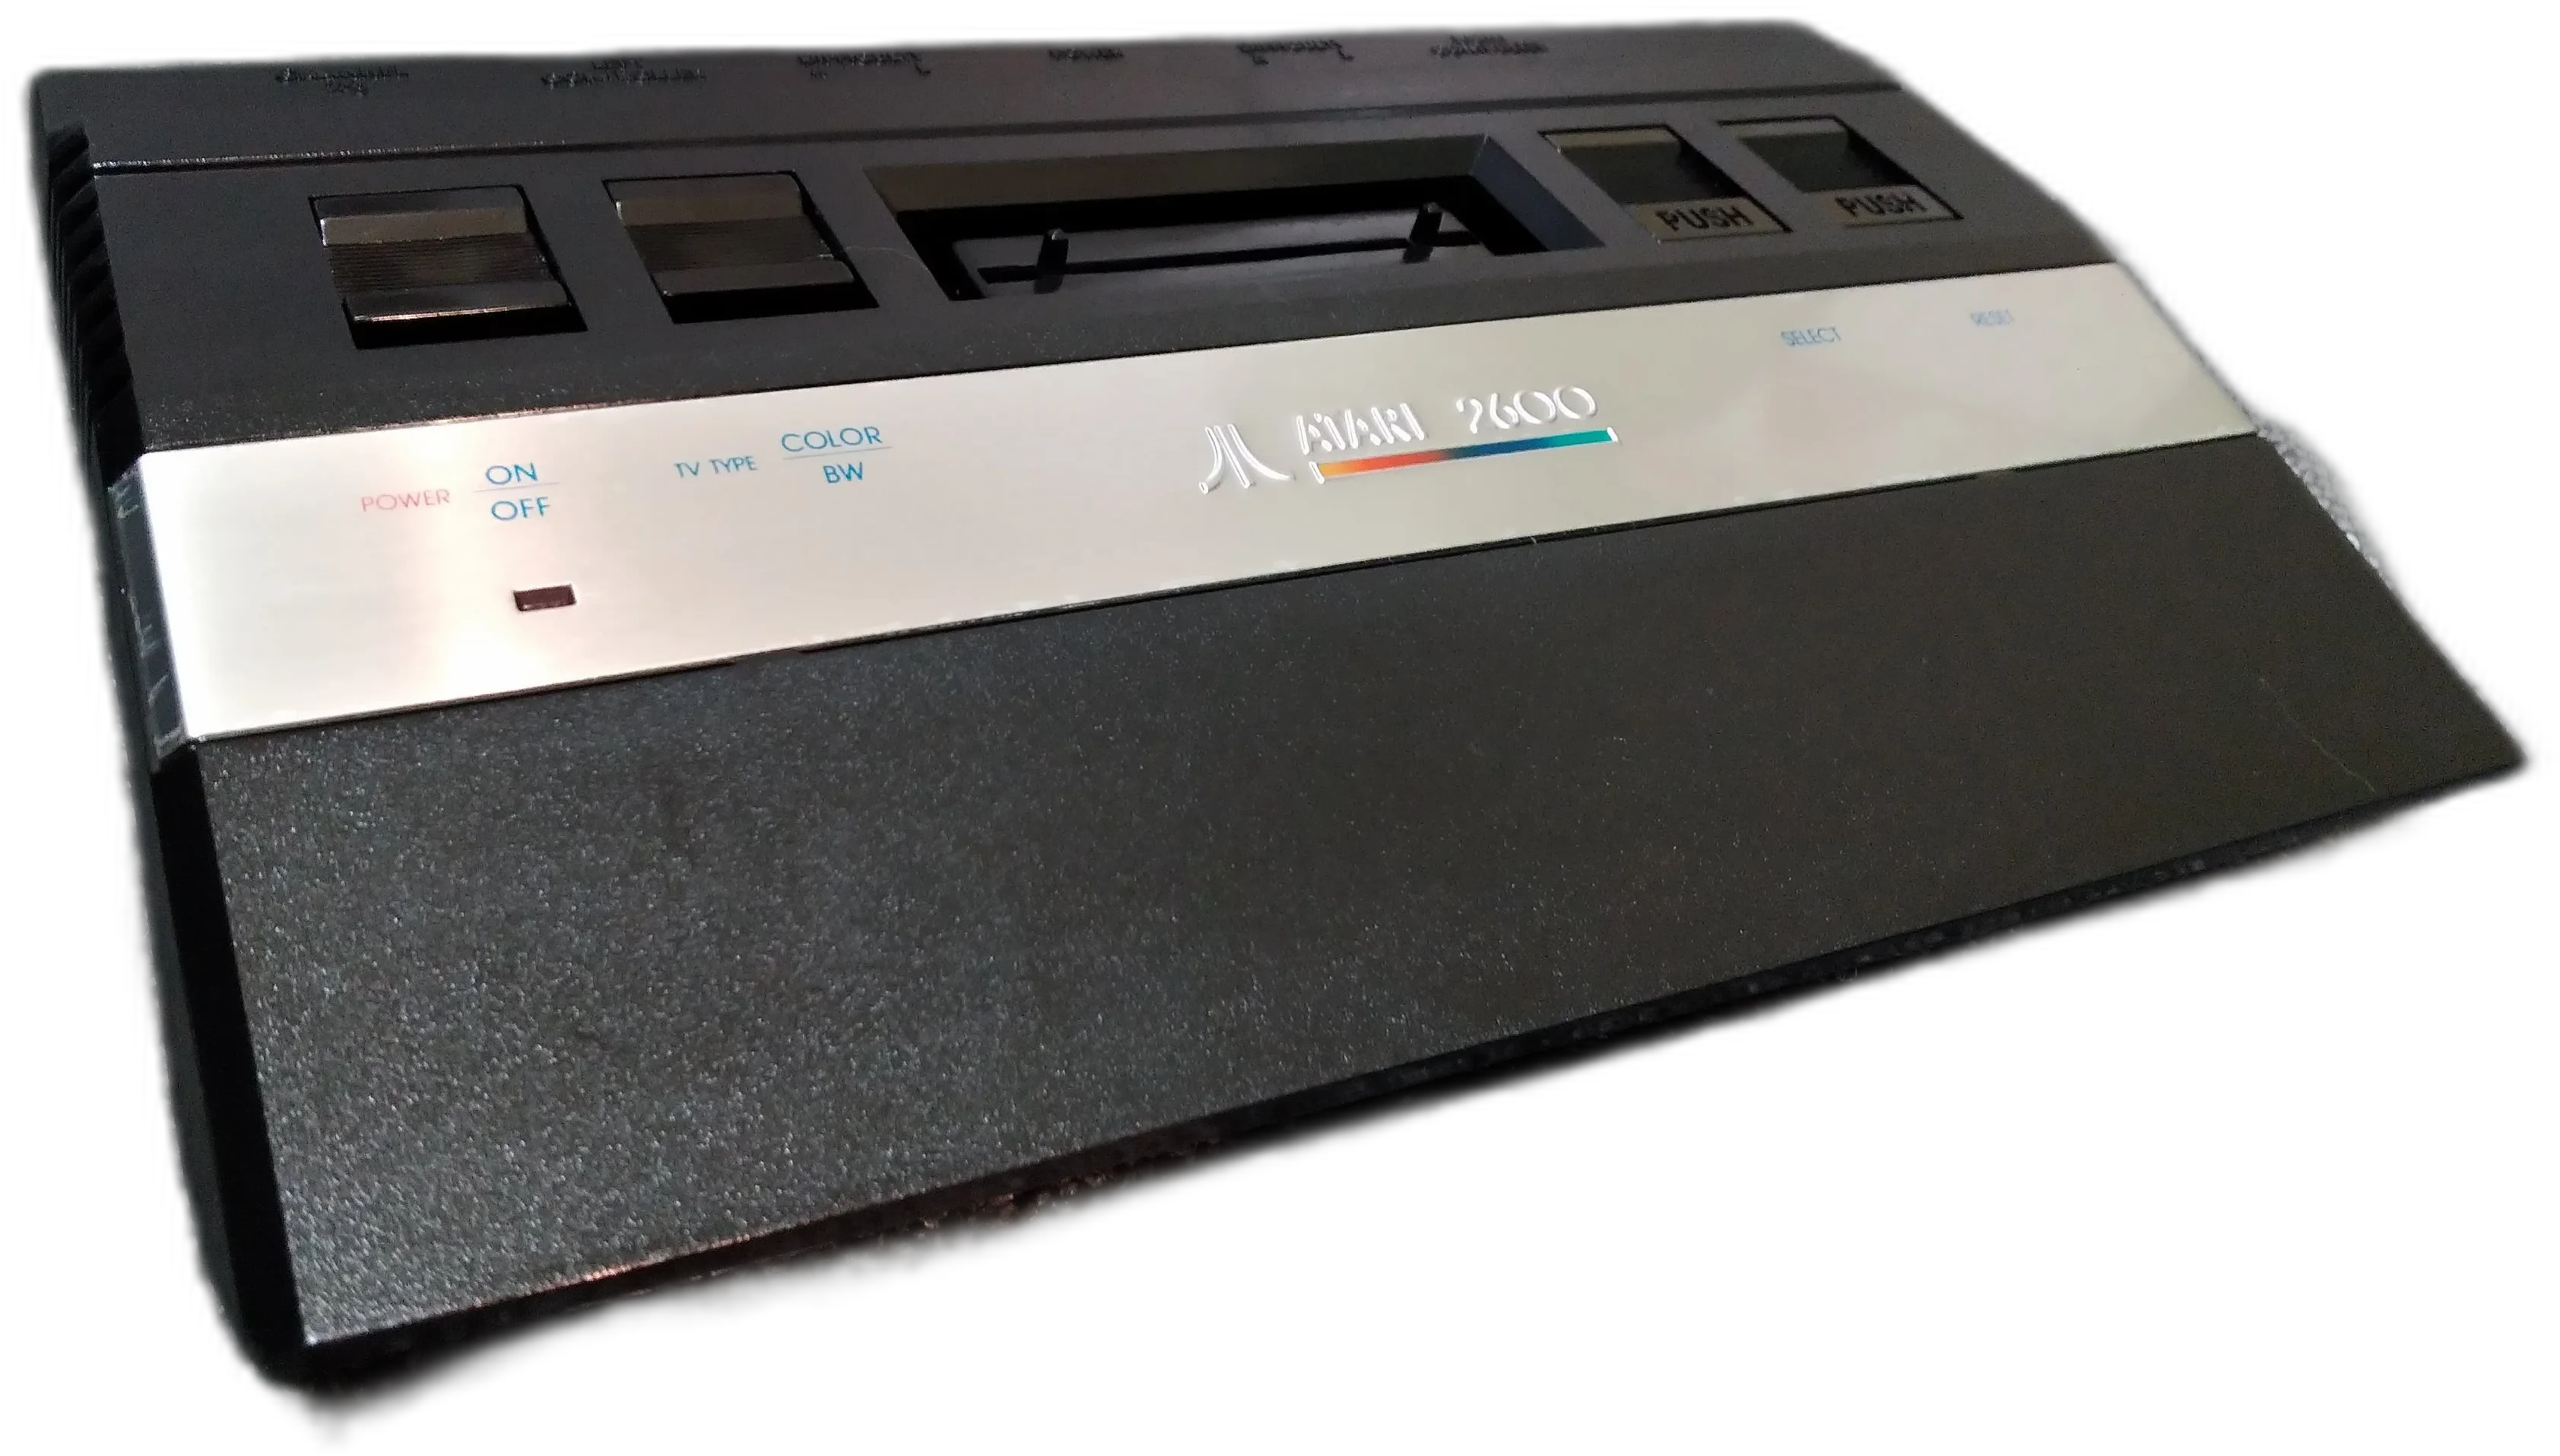  Atari 2600 Jr. Console (early model)